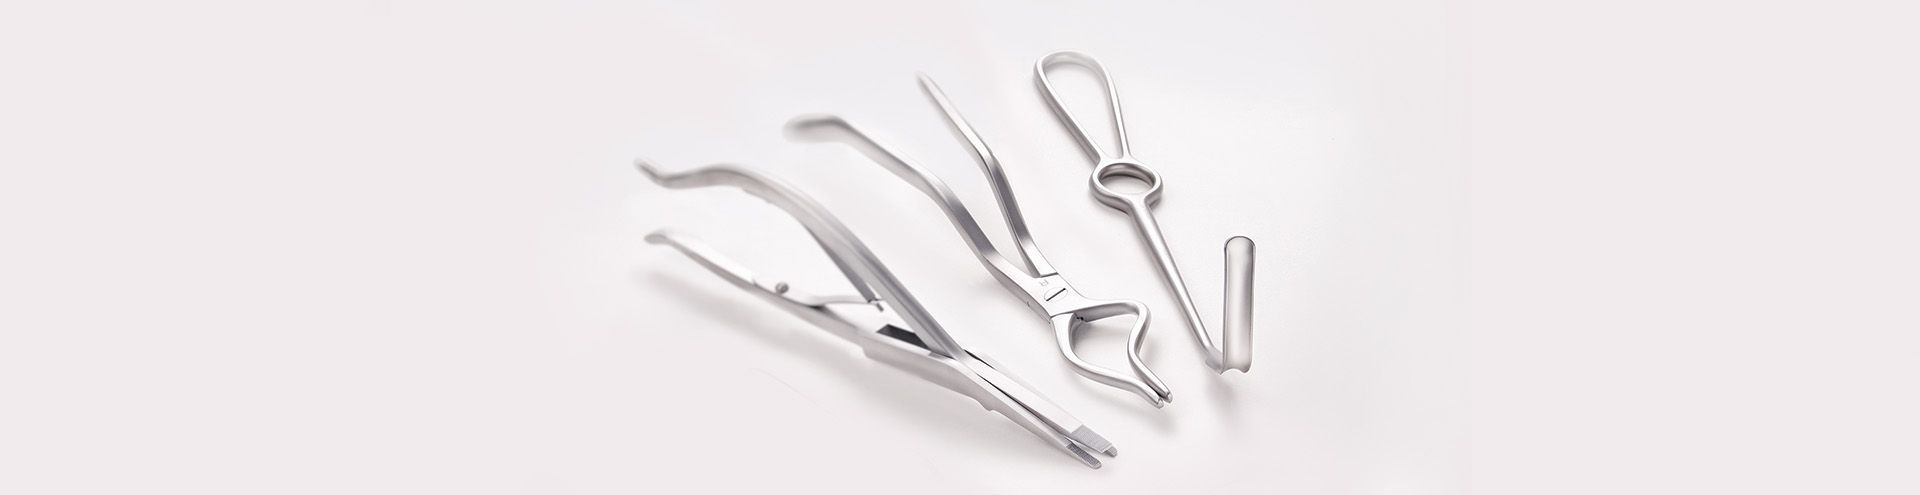 Surgical instruments for craniomaxillofacial surgery